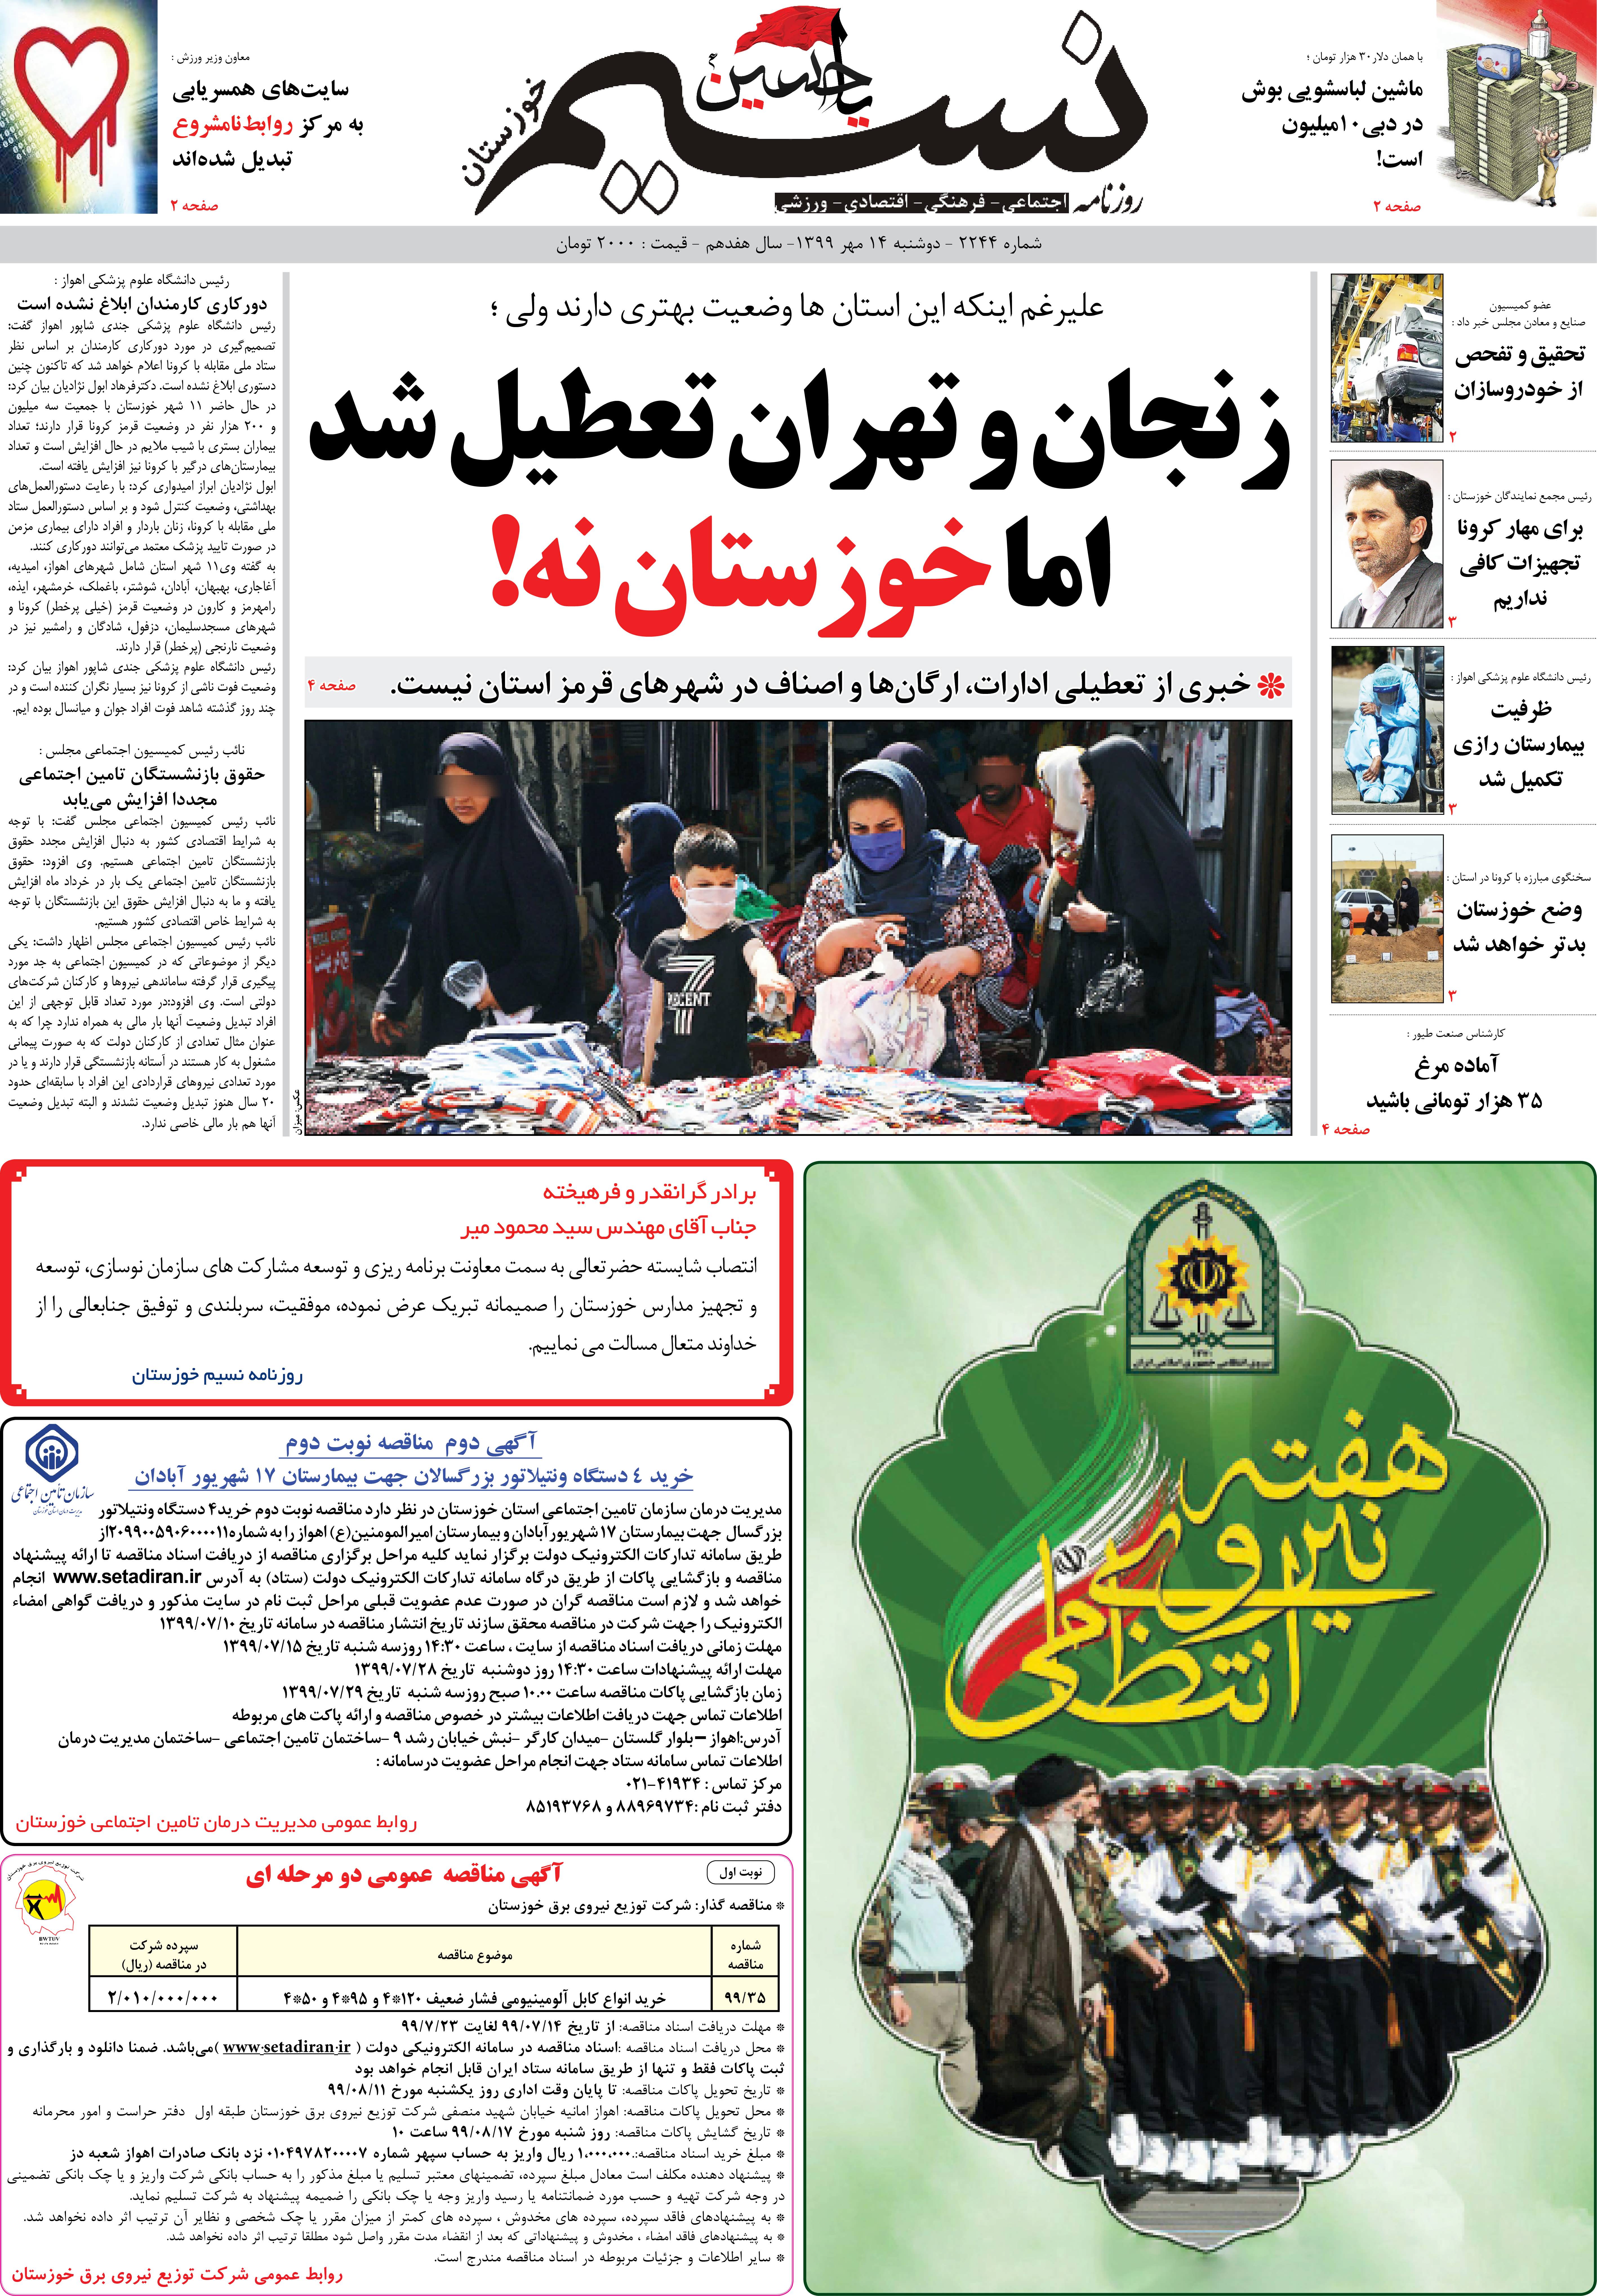 صفحه اصلی روزنامه نسیم شماره 2244 